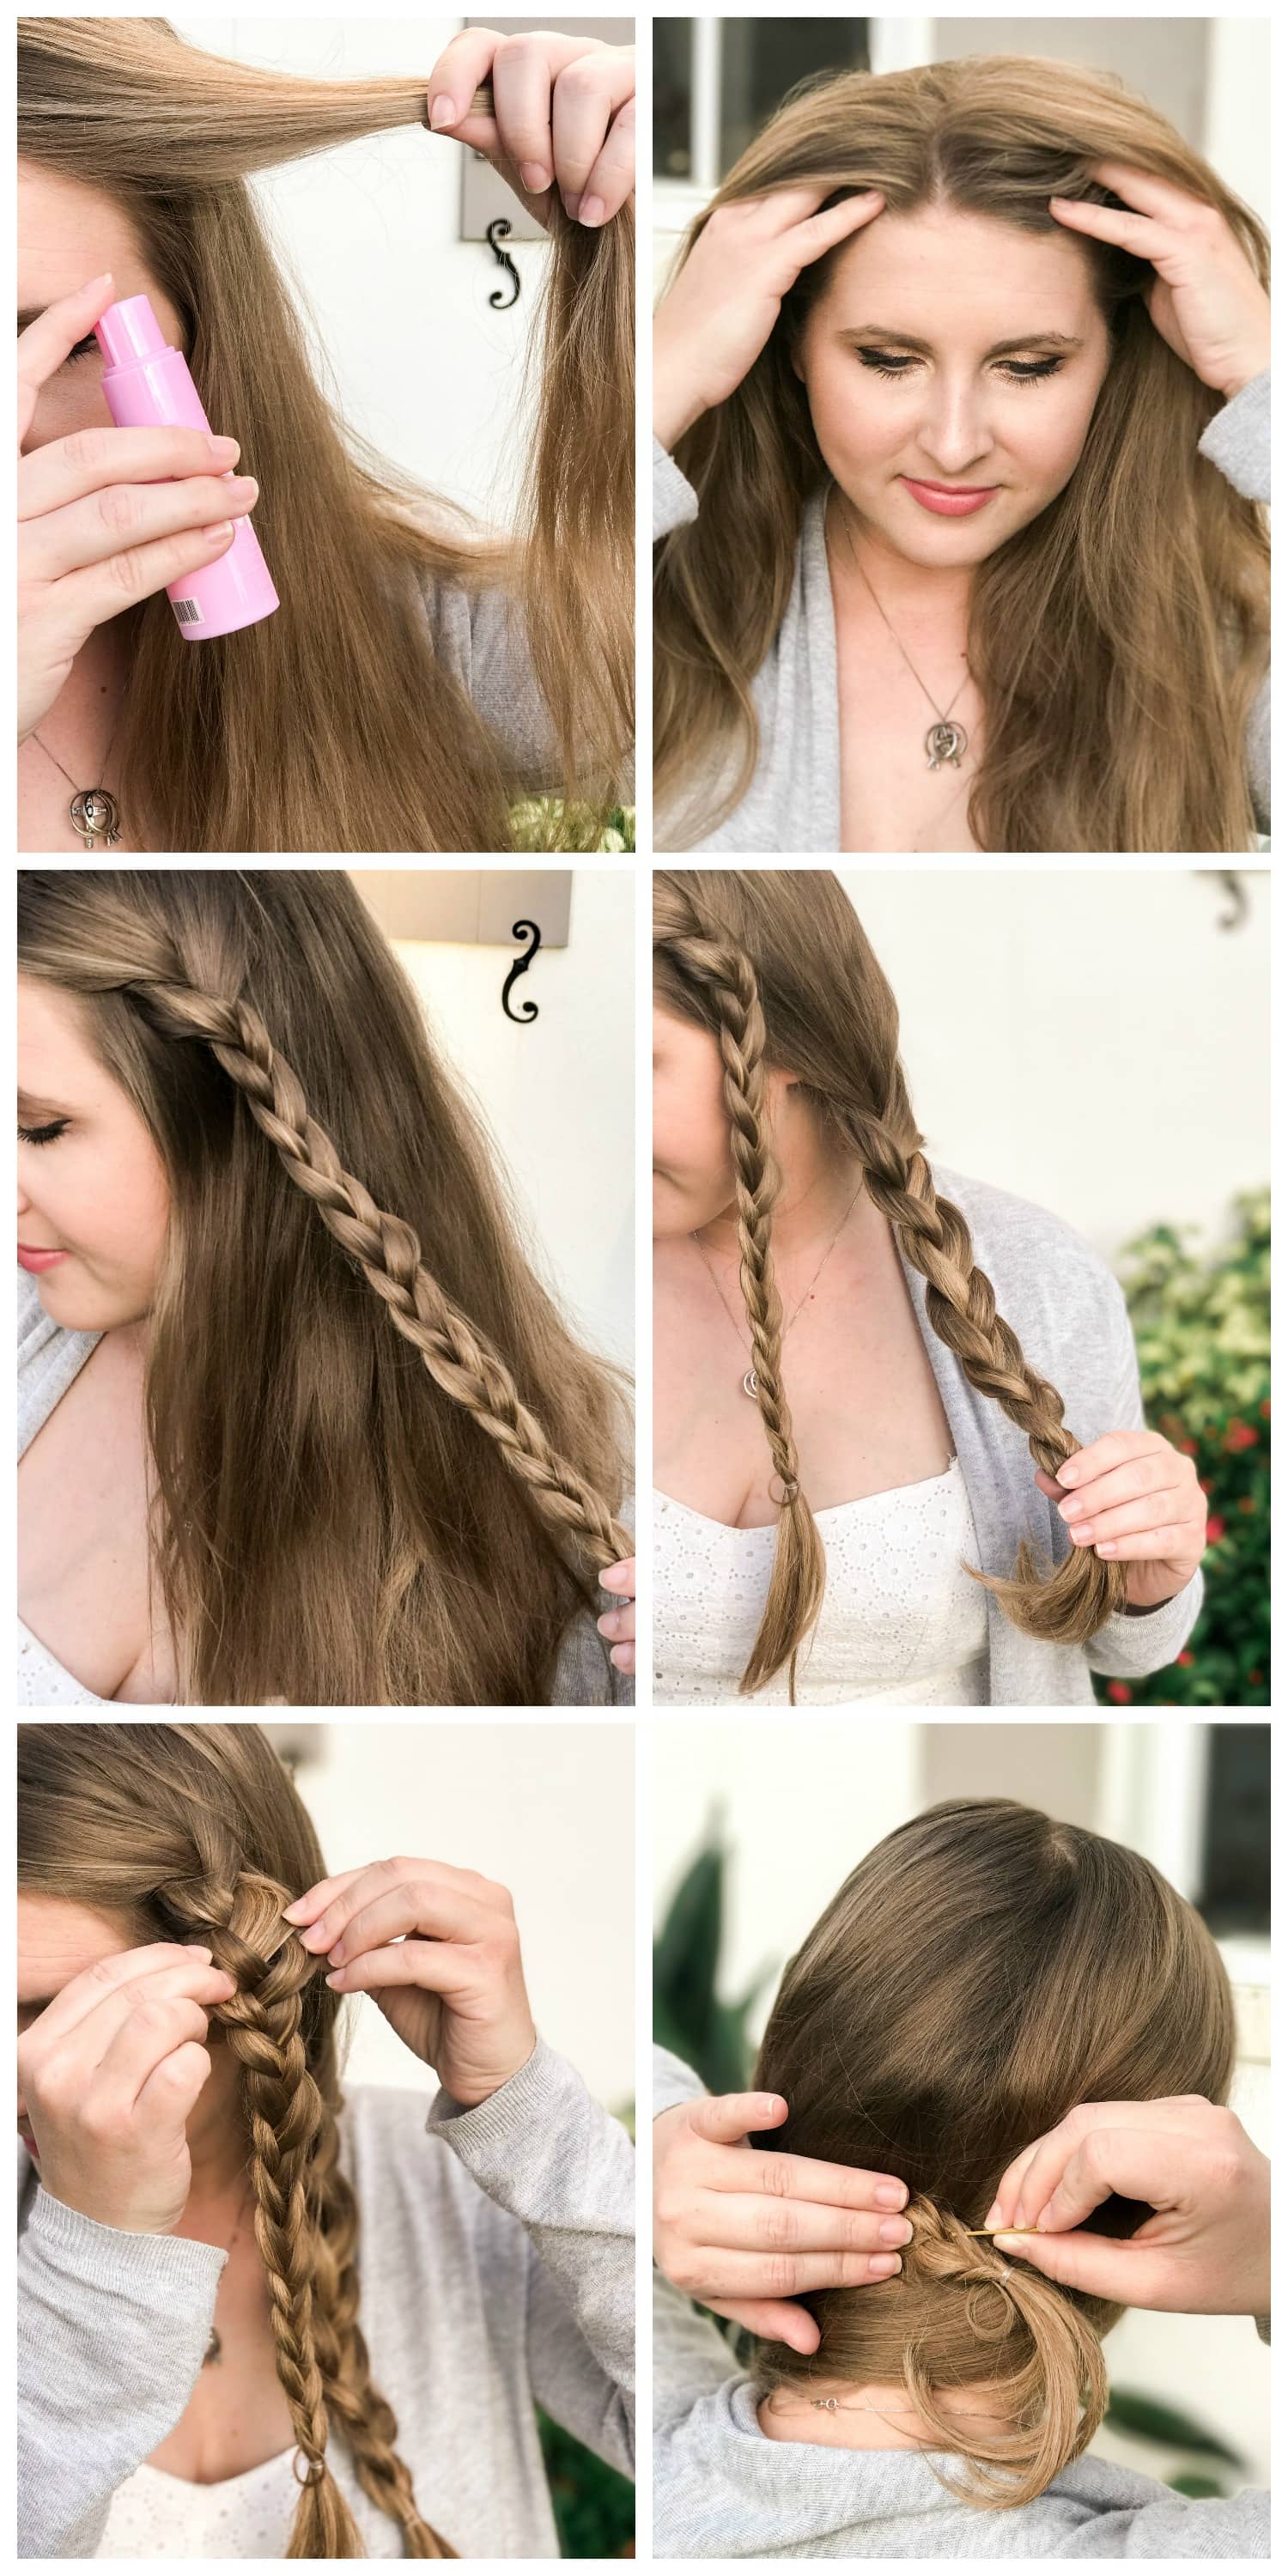 easy side braid tutorial blonde hair cute braid braid inspiration | Ashley Brooke Nicholas beauty blogger